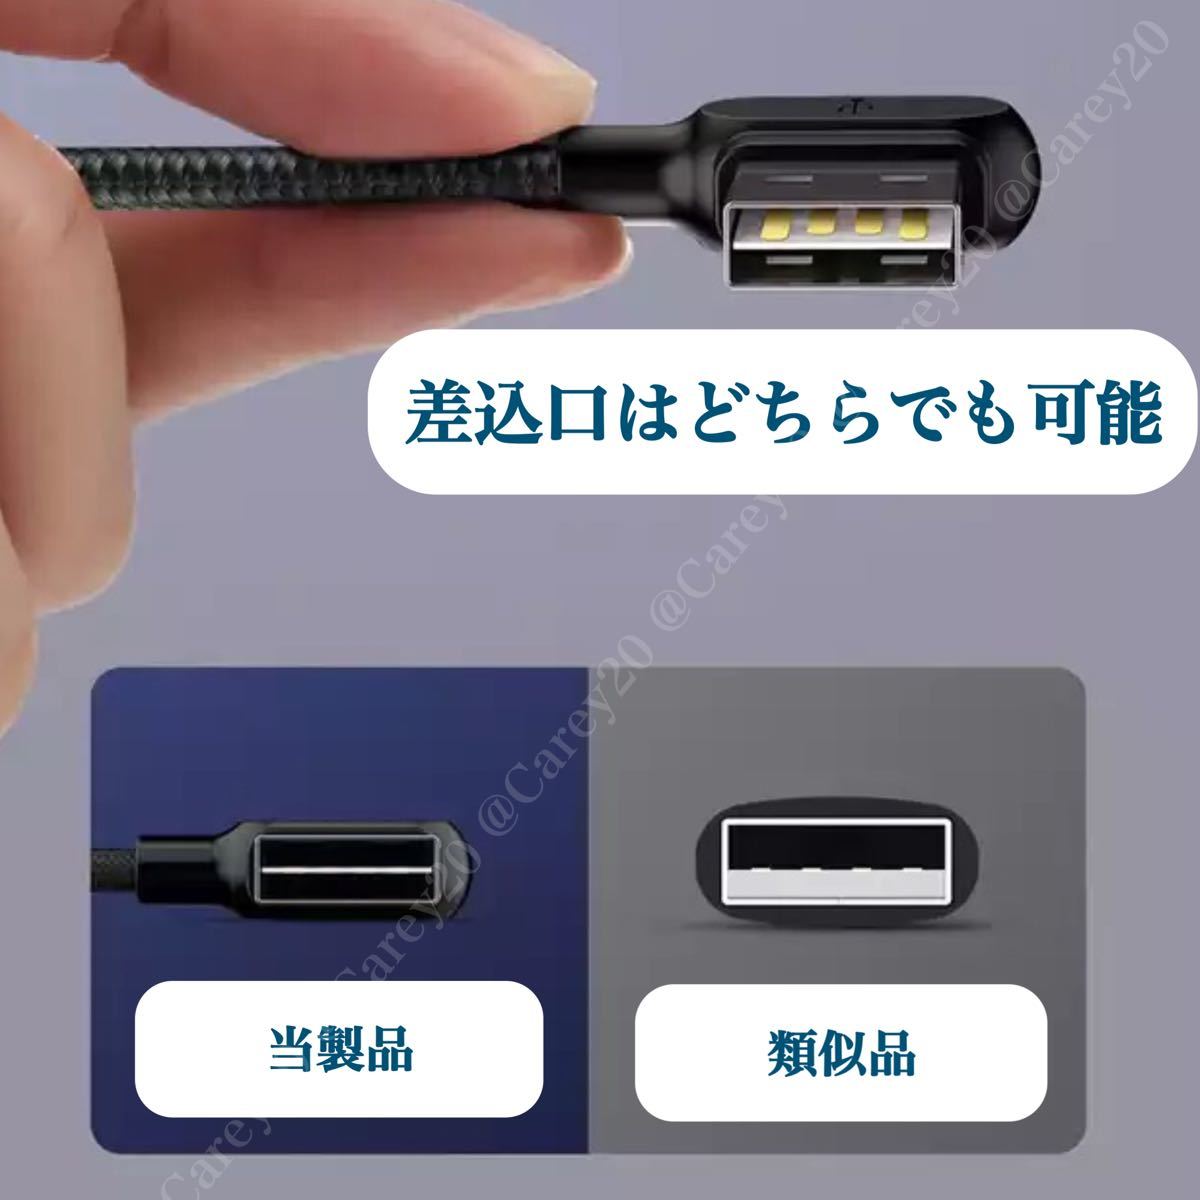 2本　L字型 1.8m/mcdodo社 充電 ケーブル ライトニングケーブル iPhone 急速 充電器 USB データ転送 新品